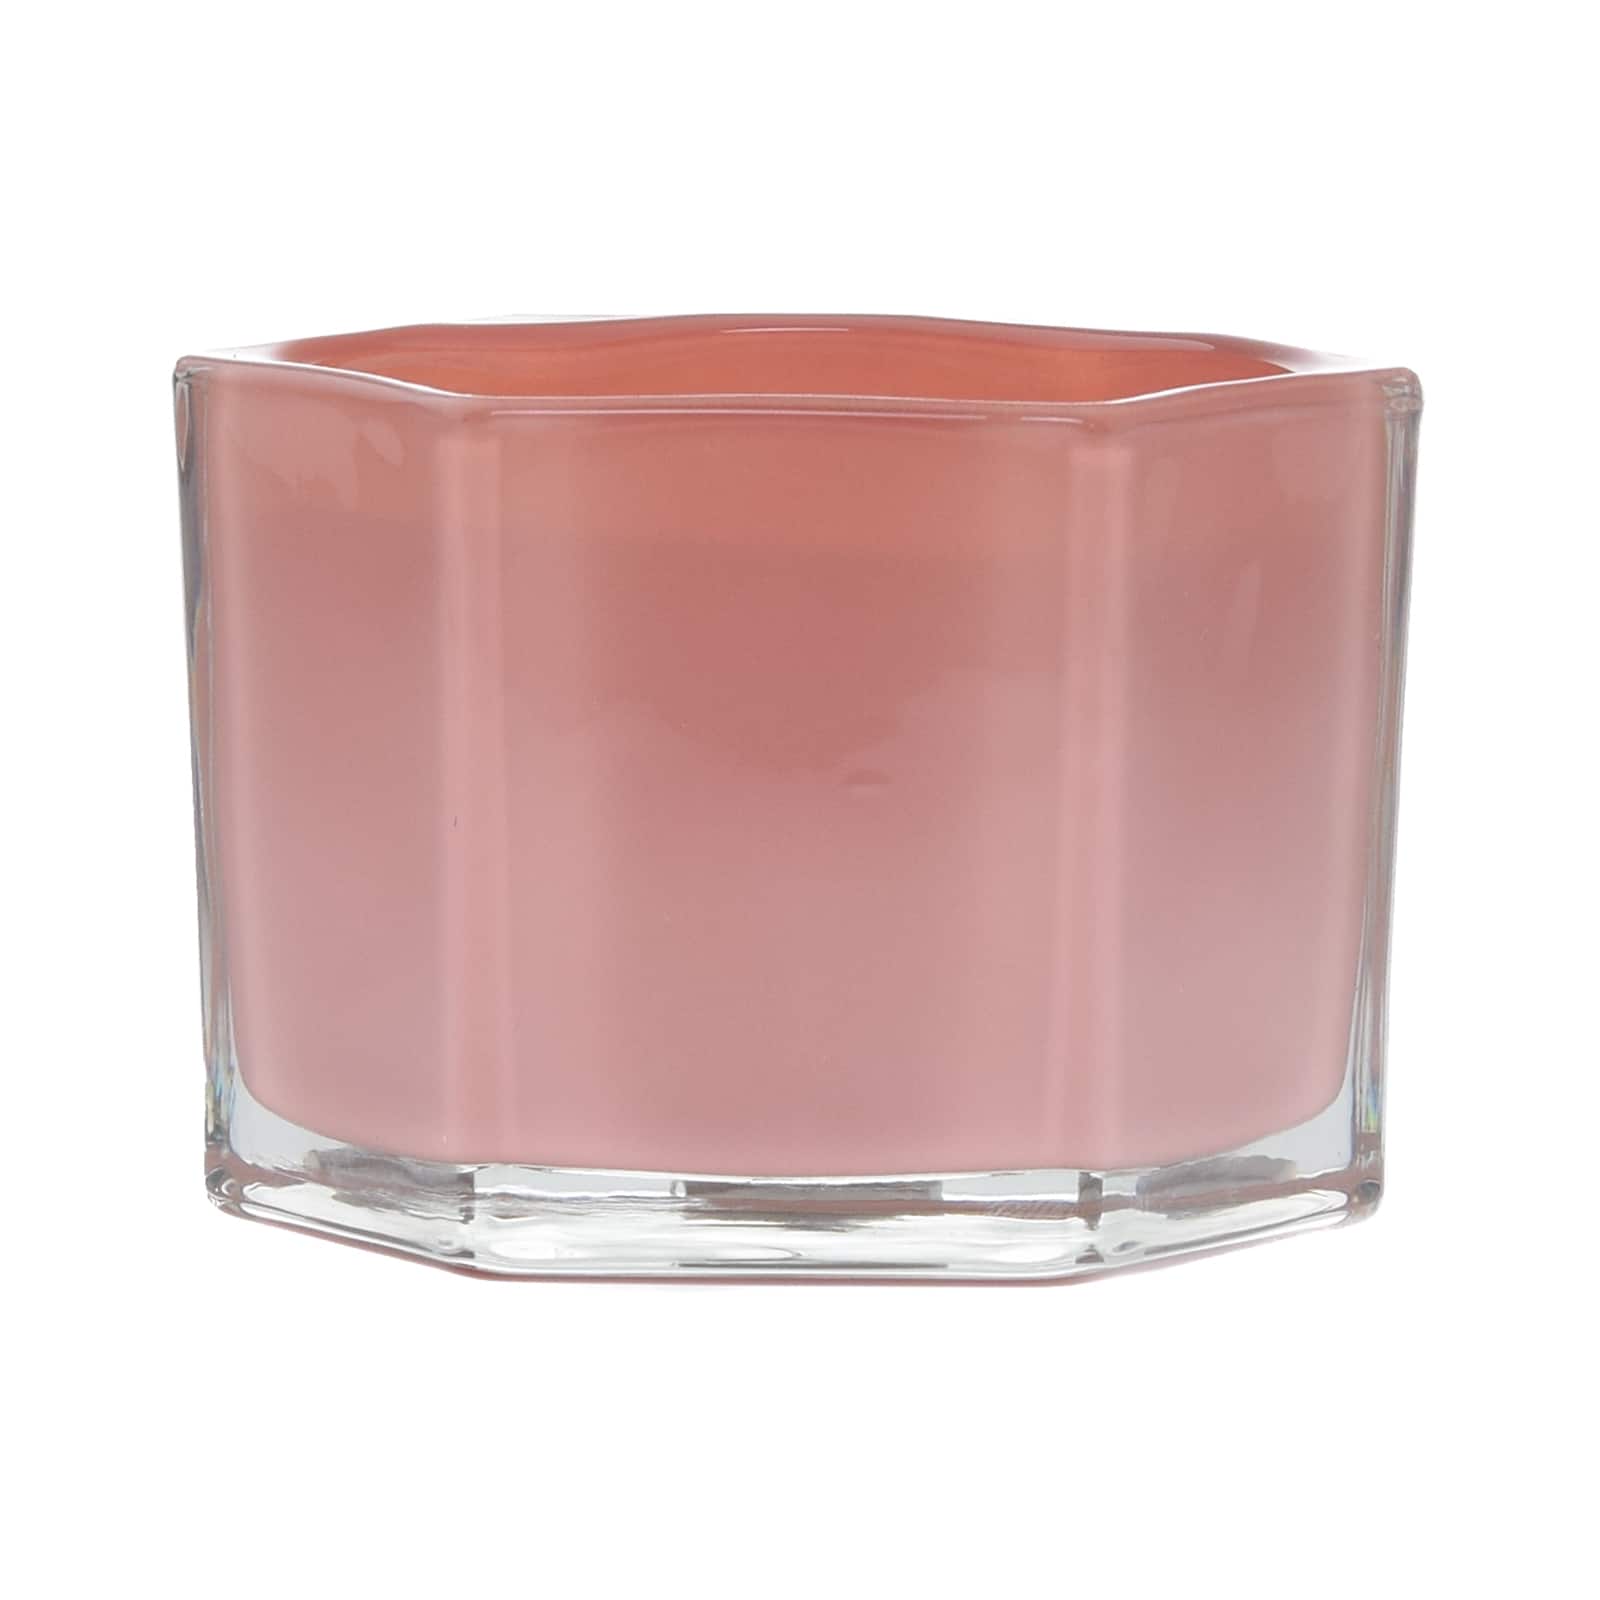 Rose &#x26; Saffron 2-Wick Jar Candle by Ashland&#xAE;